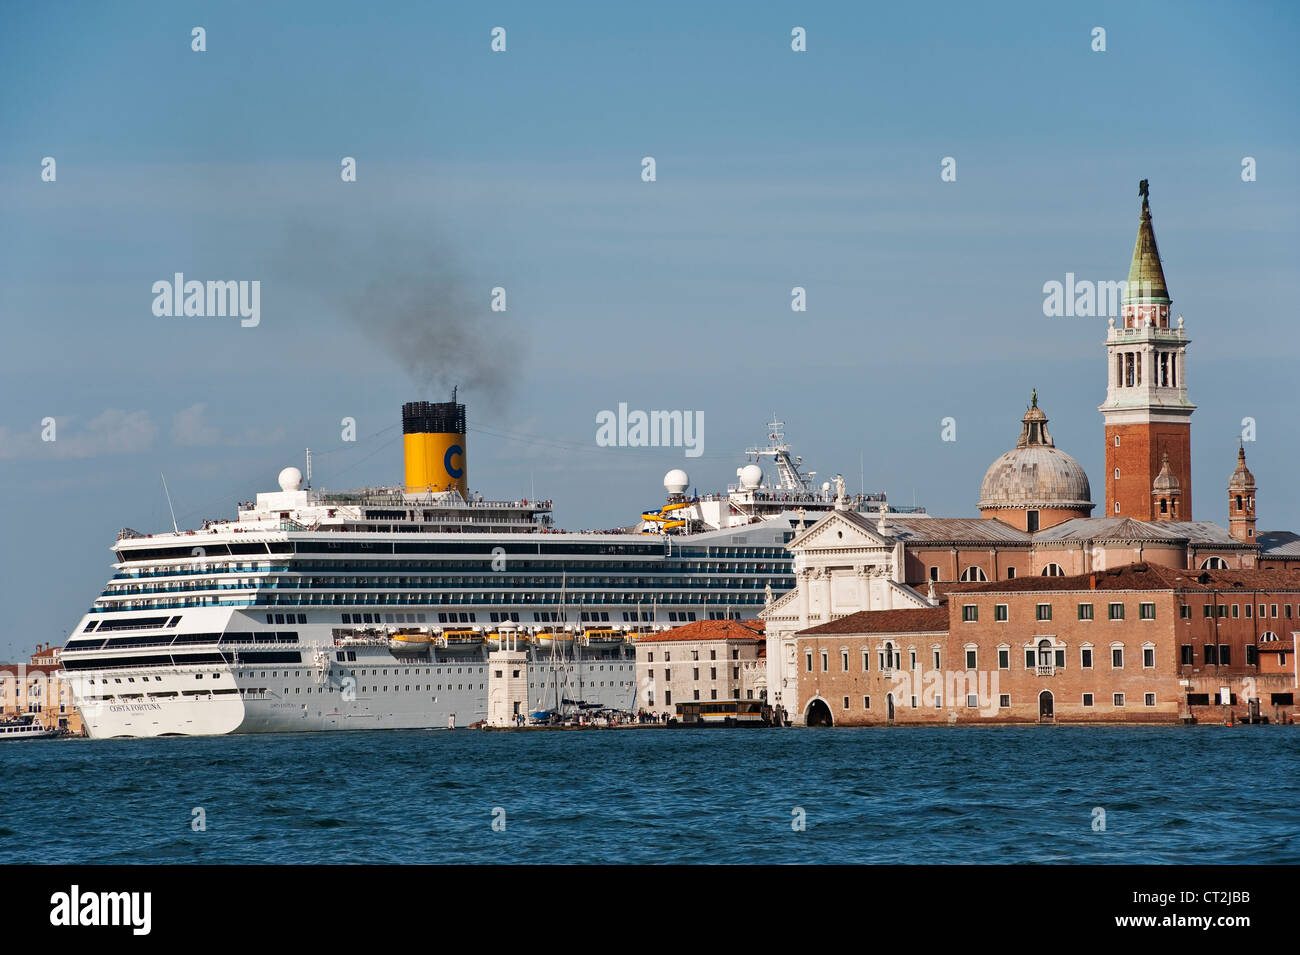 Das riesige Kreuzfahrtschiff Costa Fortuna (im Besitz der Reederei Carnival Corporation) in Venedig, Italien, vorbei an der Kirche San Giorgio Maggiore Stockfoto